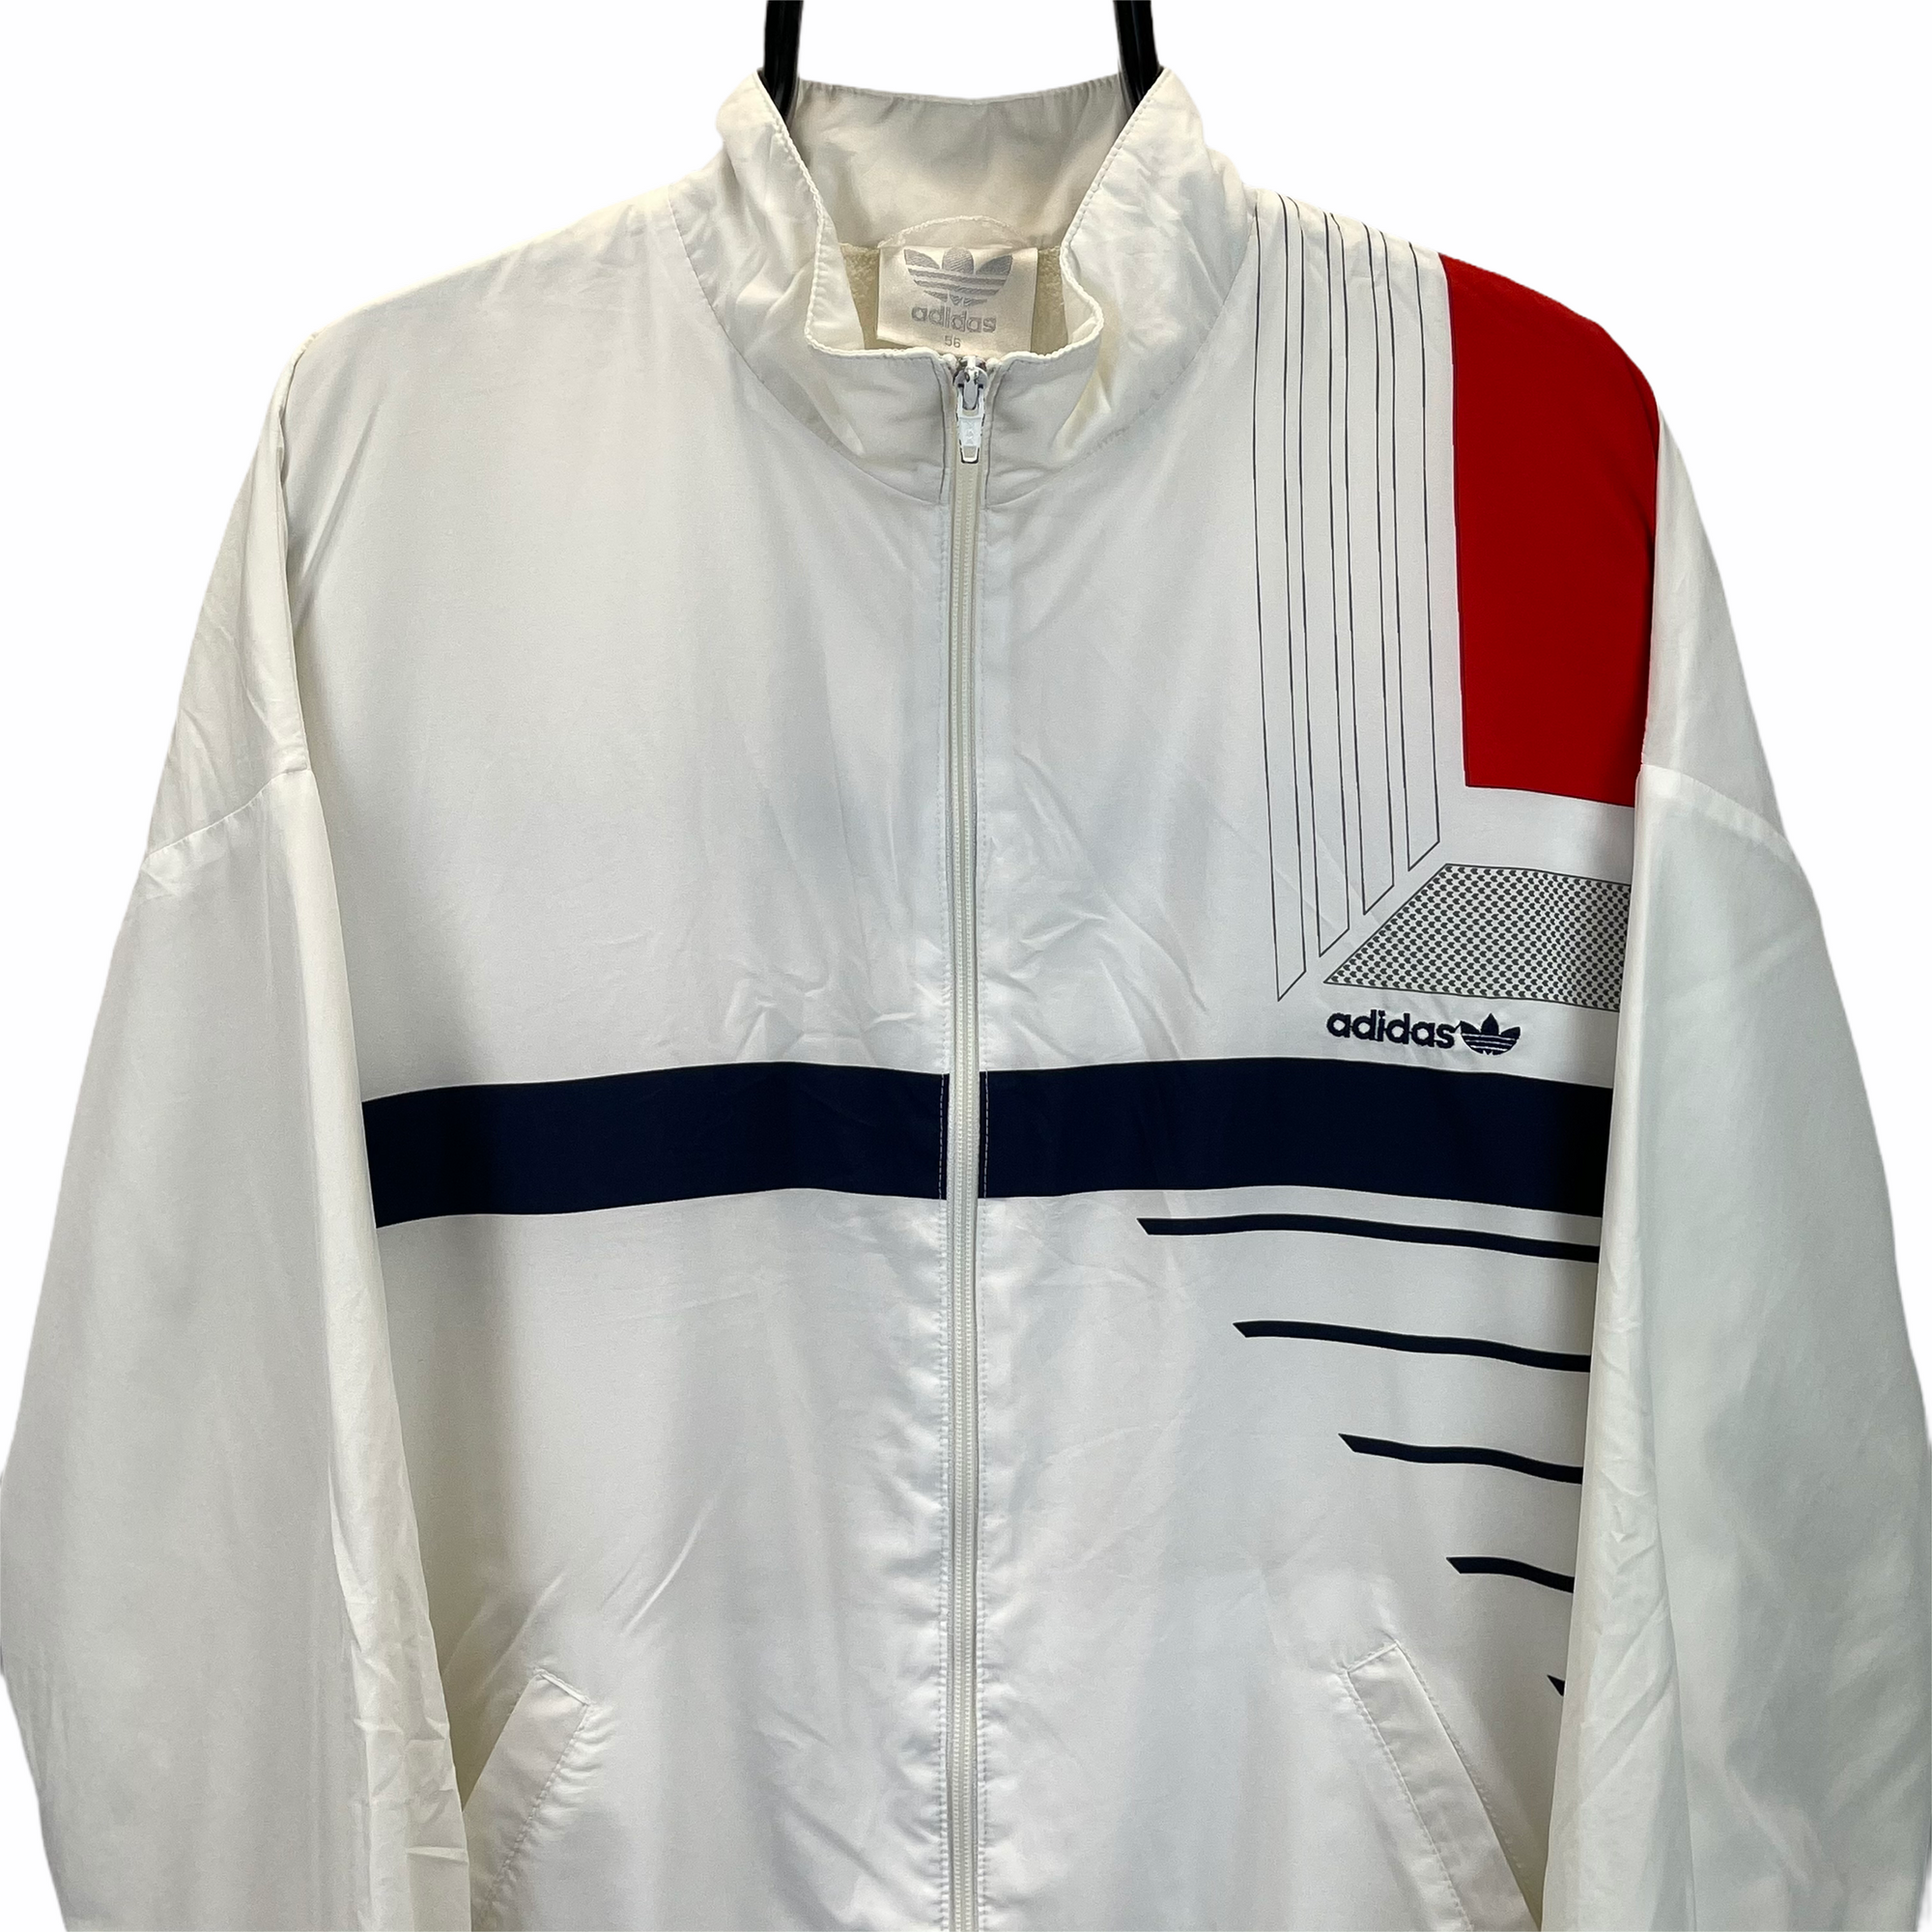 Vintage 90s Adidas Track Jacket in White, Red & Navy - Men's XL/Women's XXL